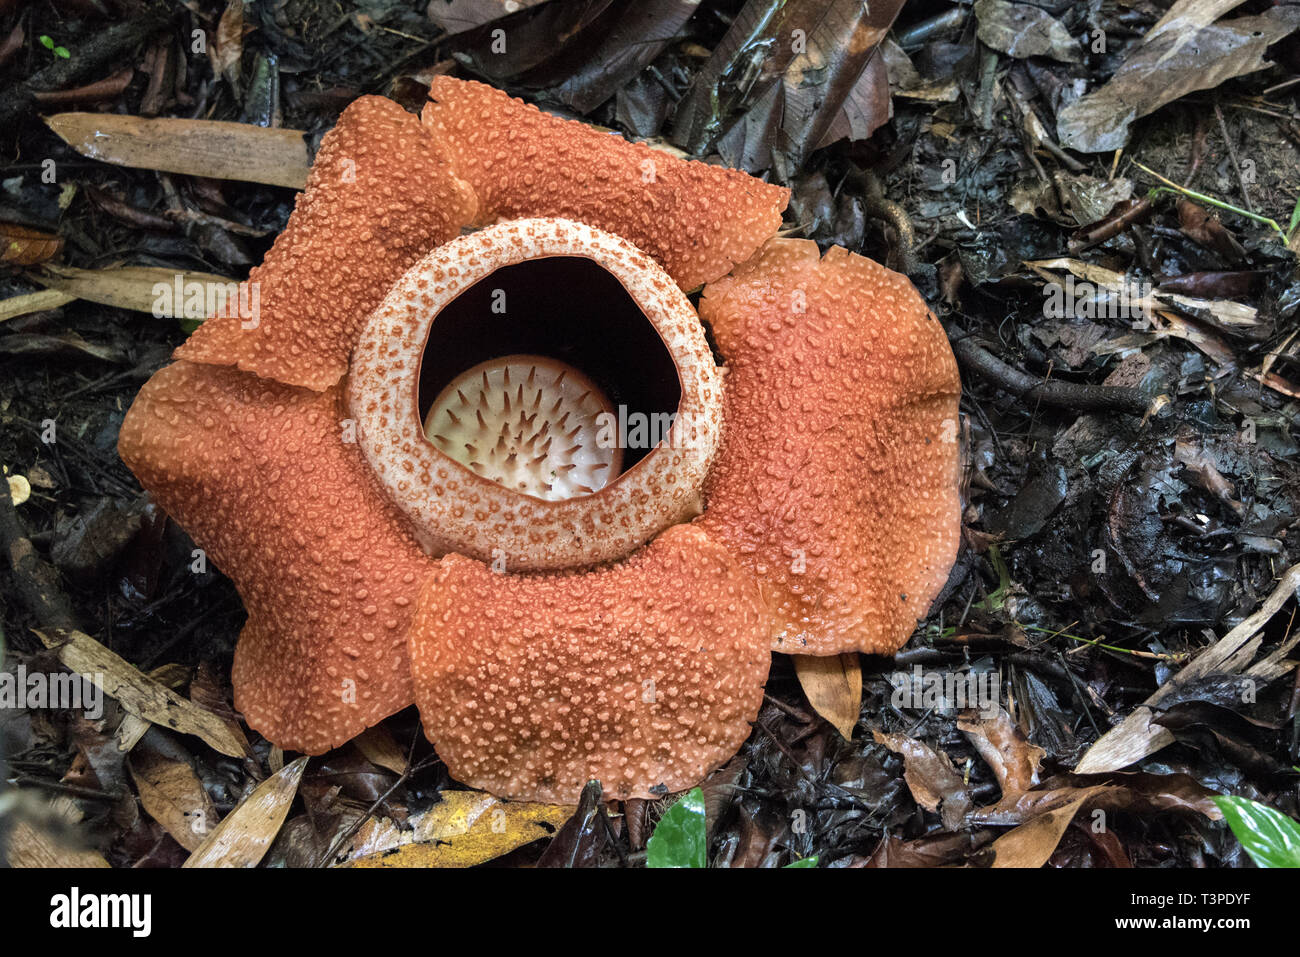 Rafflessia Blume, seltene fleischfressende Pflanze, Borneo. Einzelne Blume  Stockfotografie - Alamy